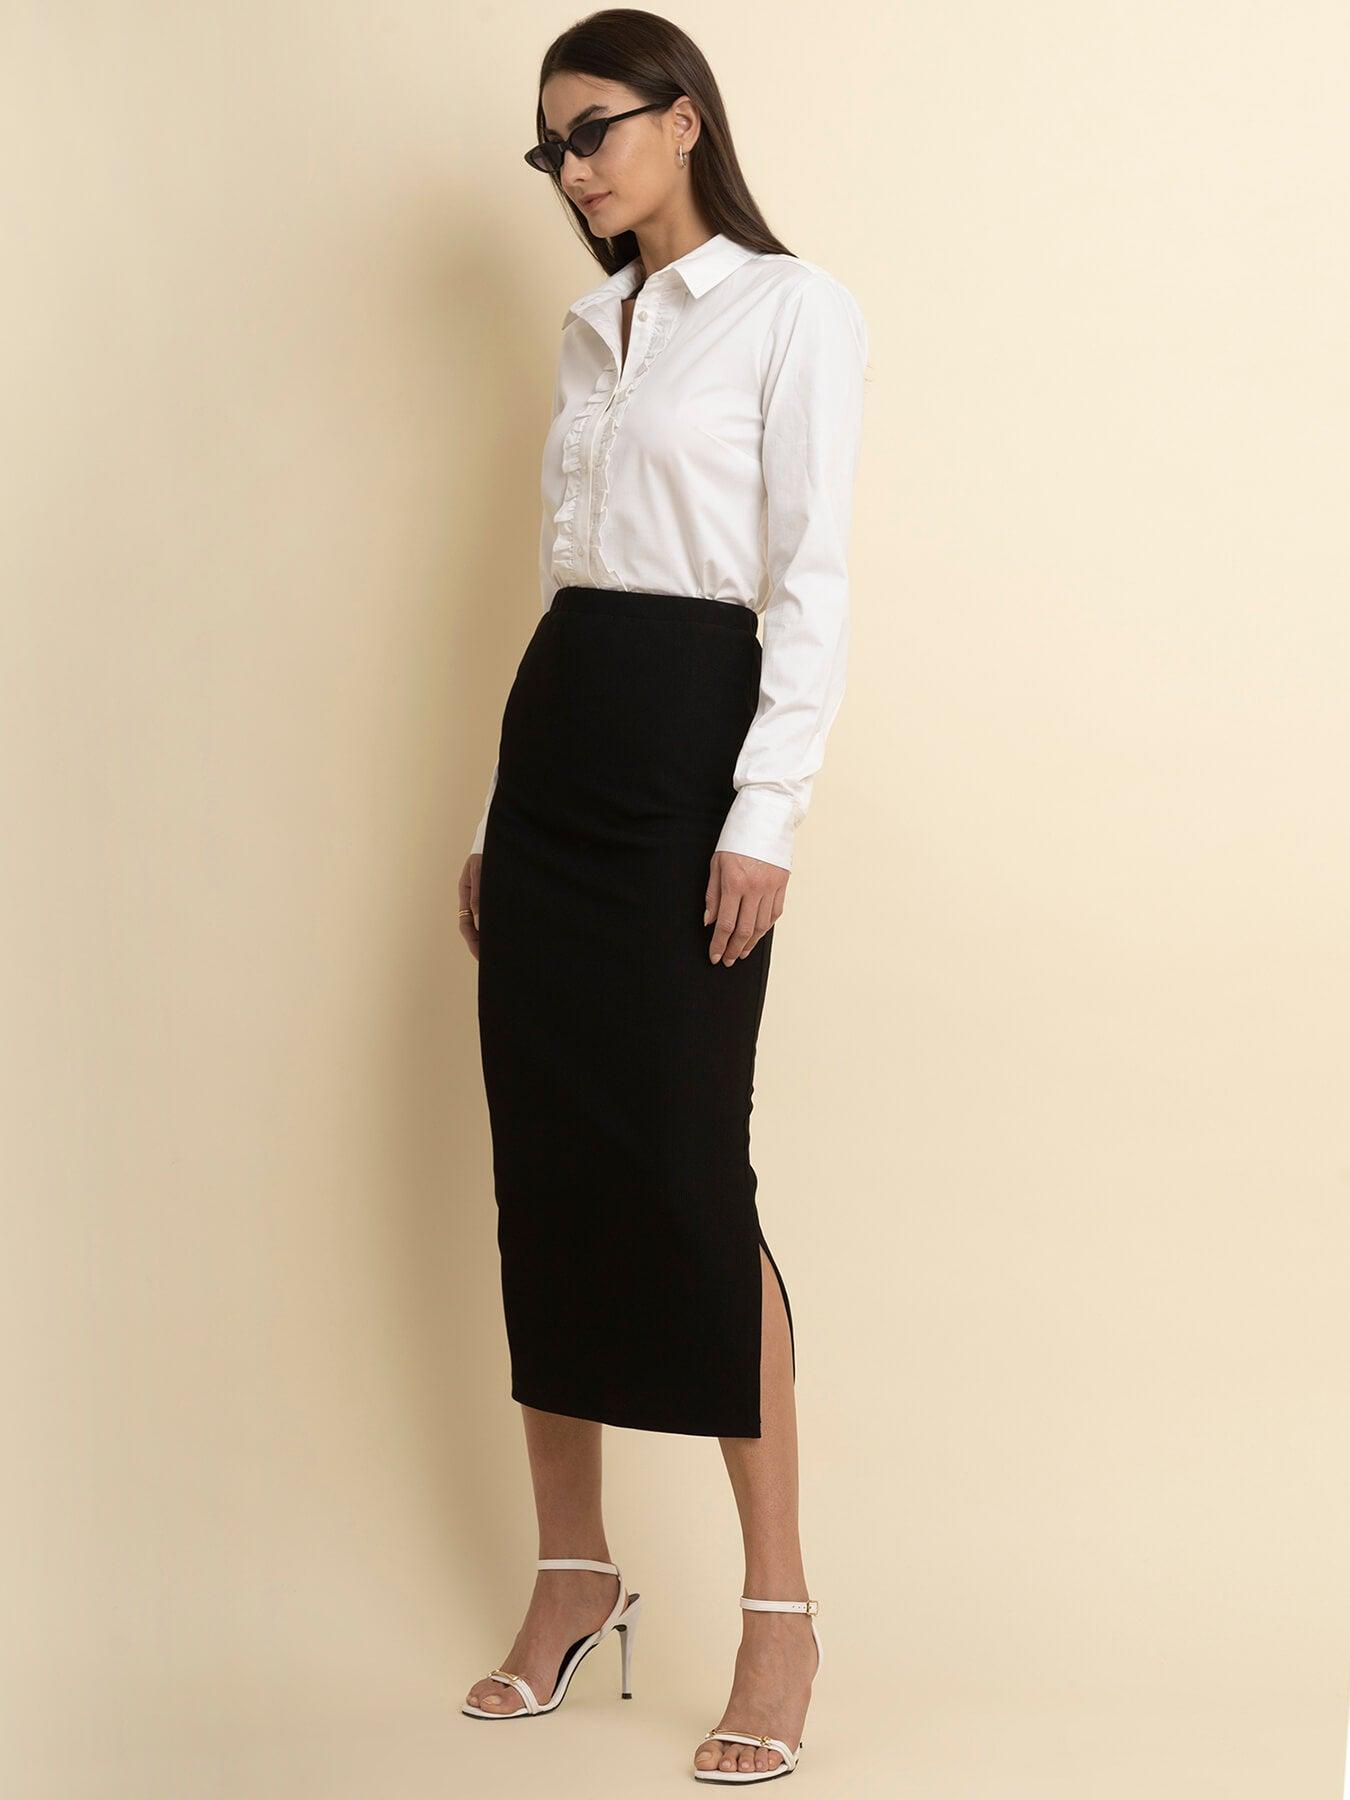 LivIn Midi Skirt - Black| Formal Skirts